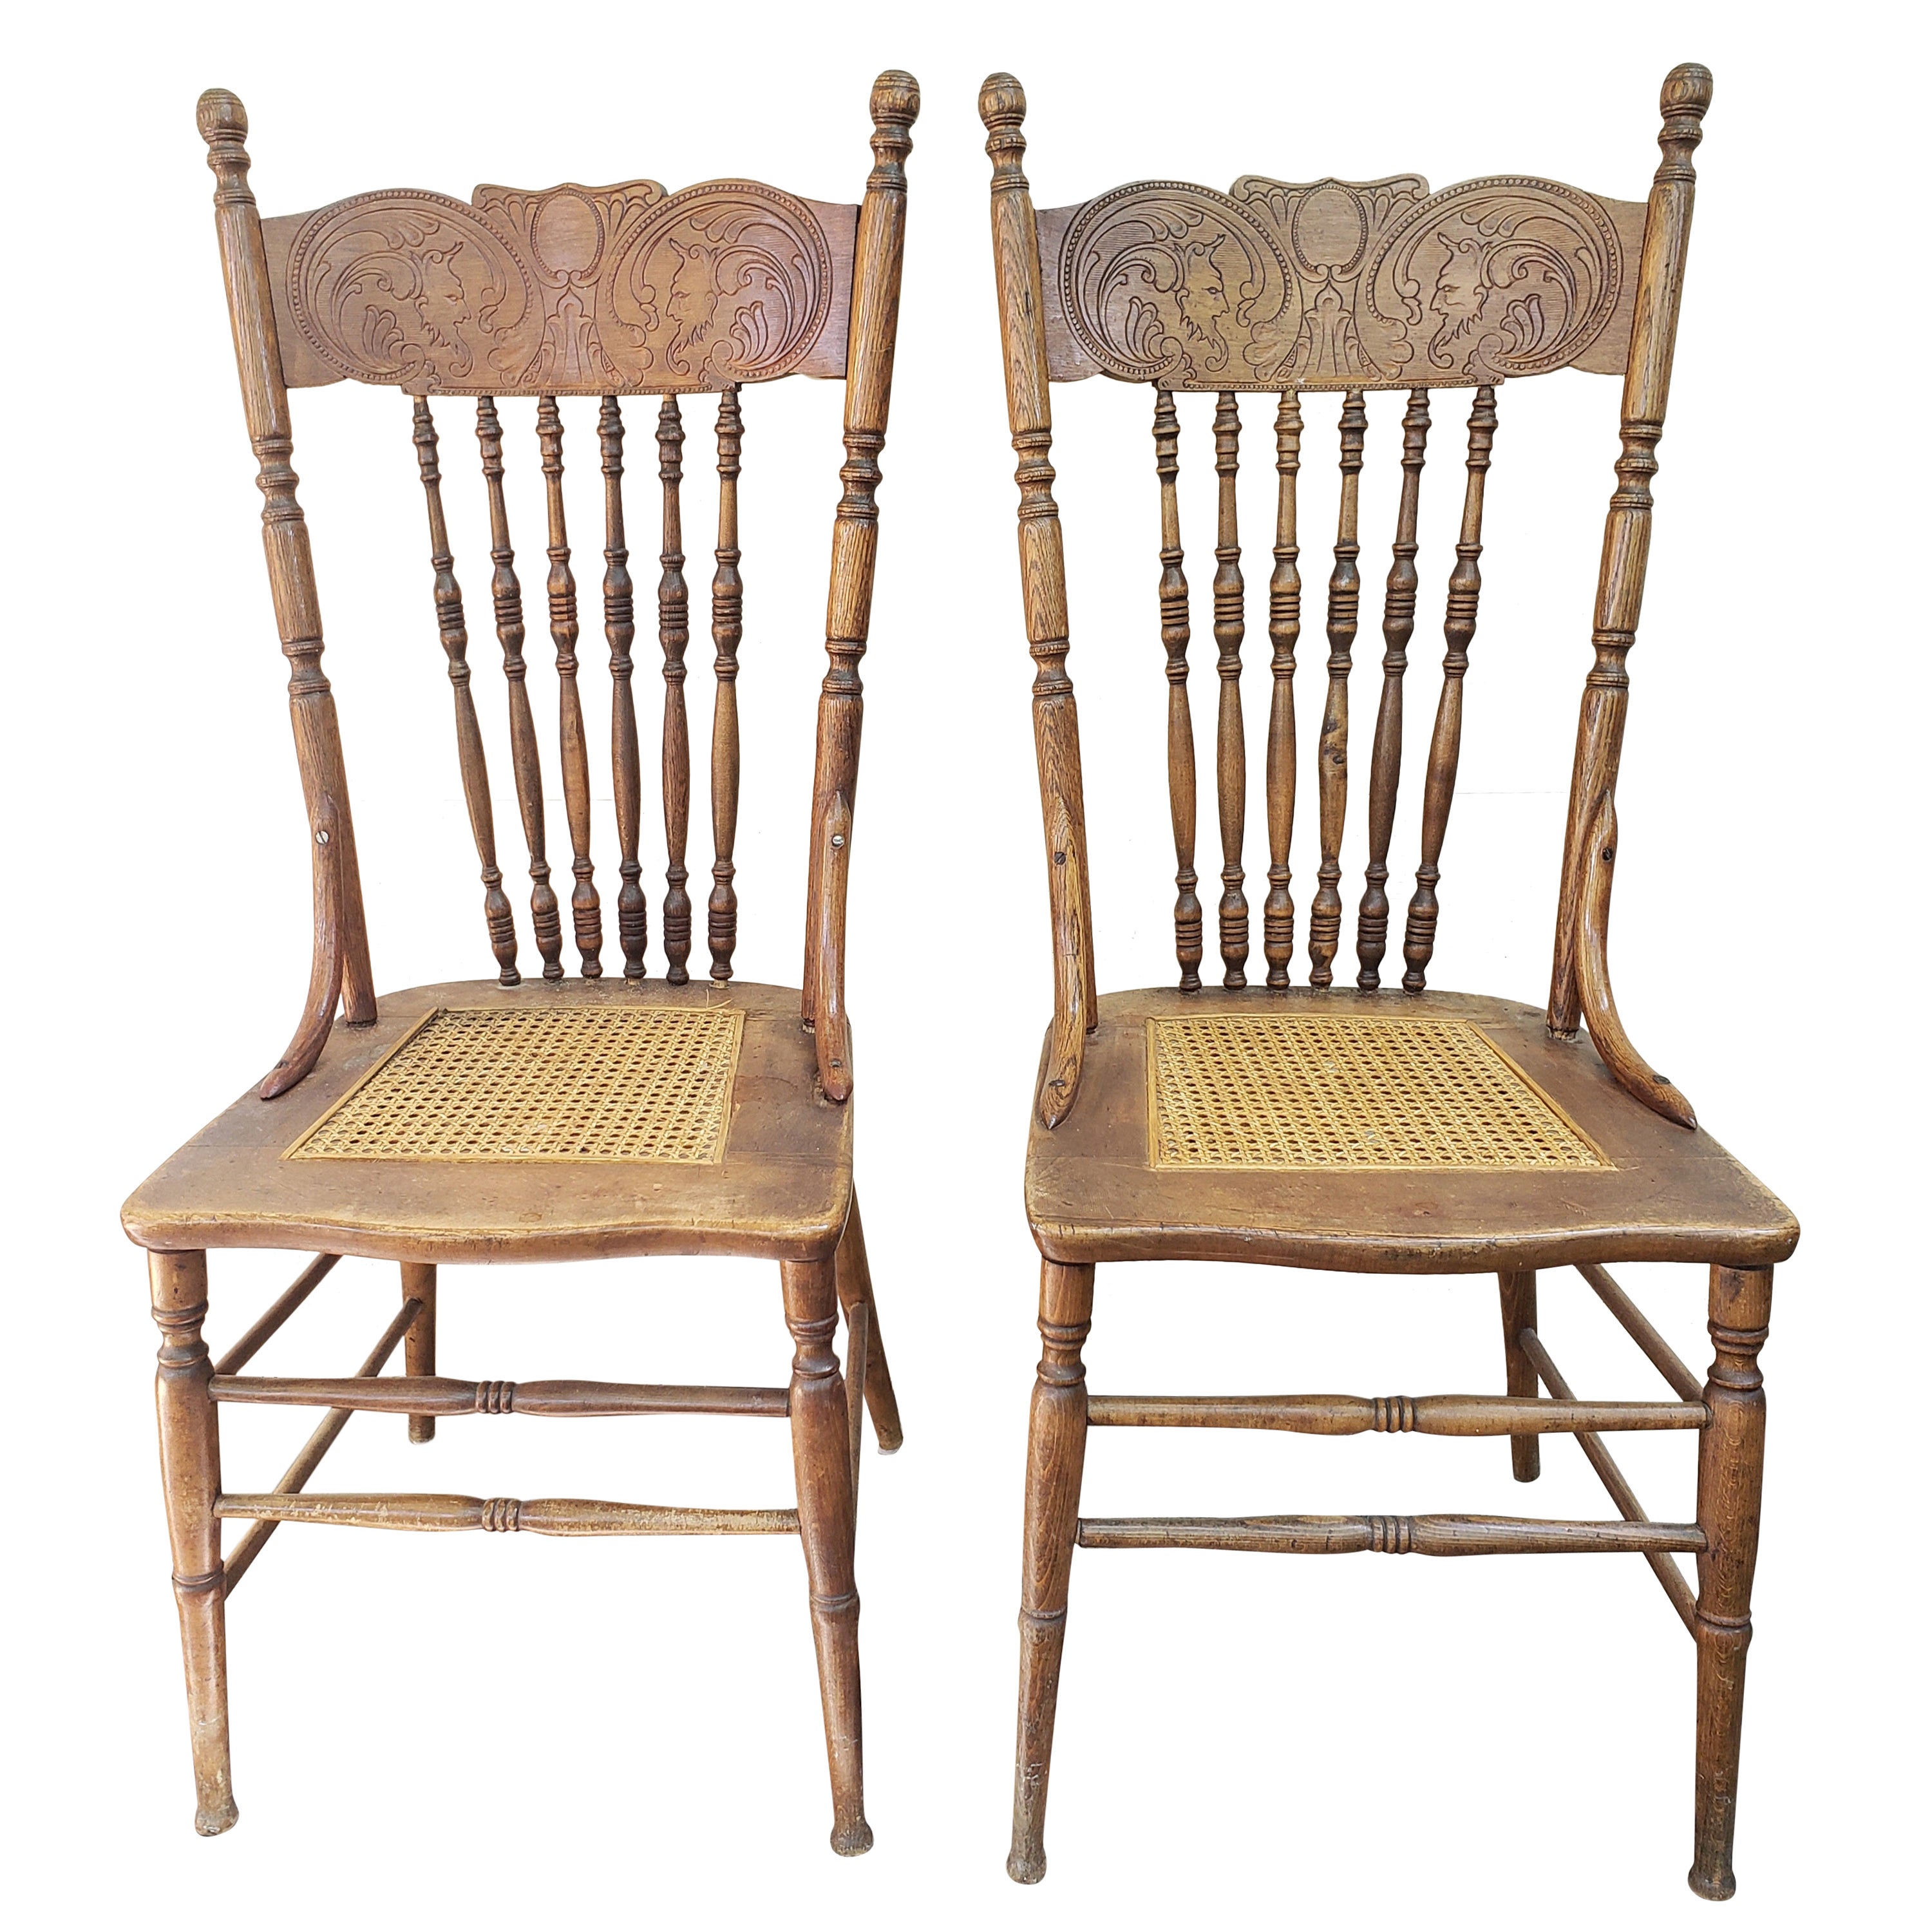 Vintage Eiche Pressback Stühle mit Rohrsitzen, ein Paar